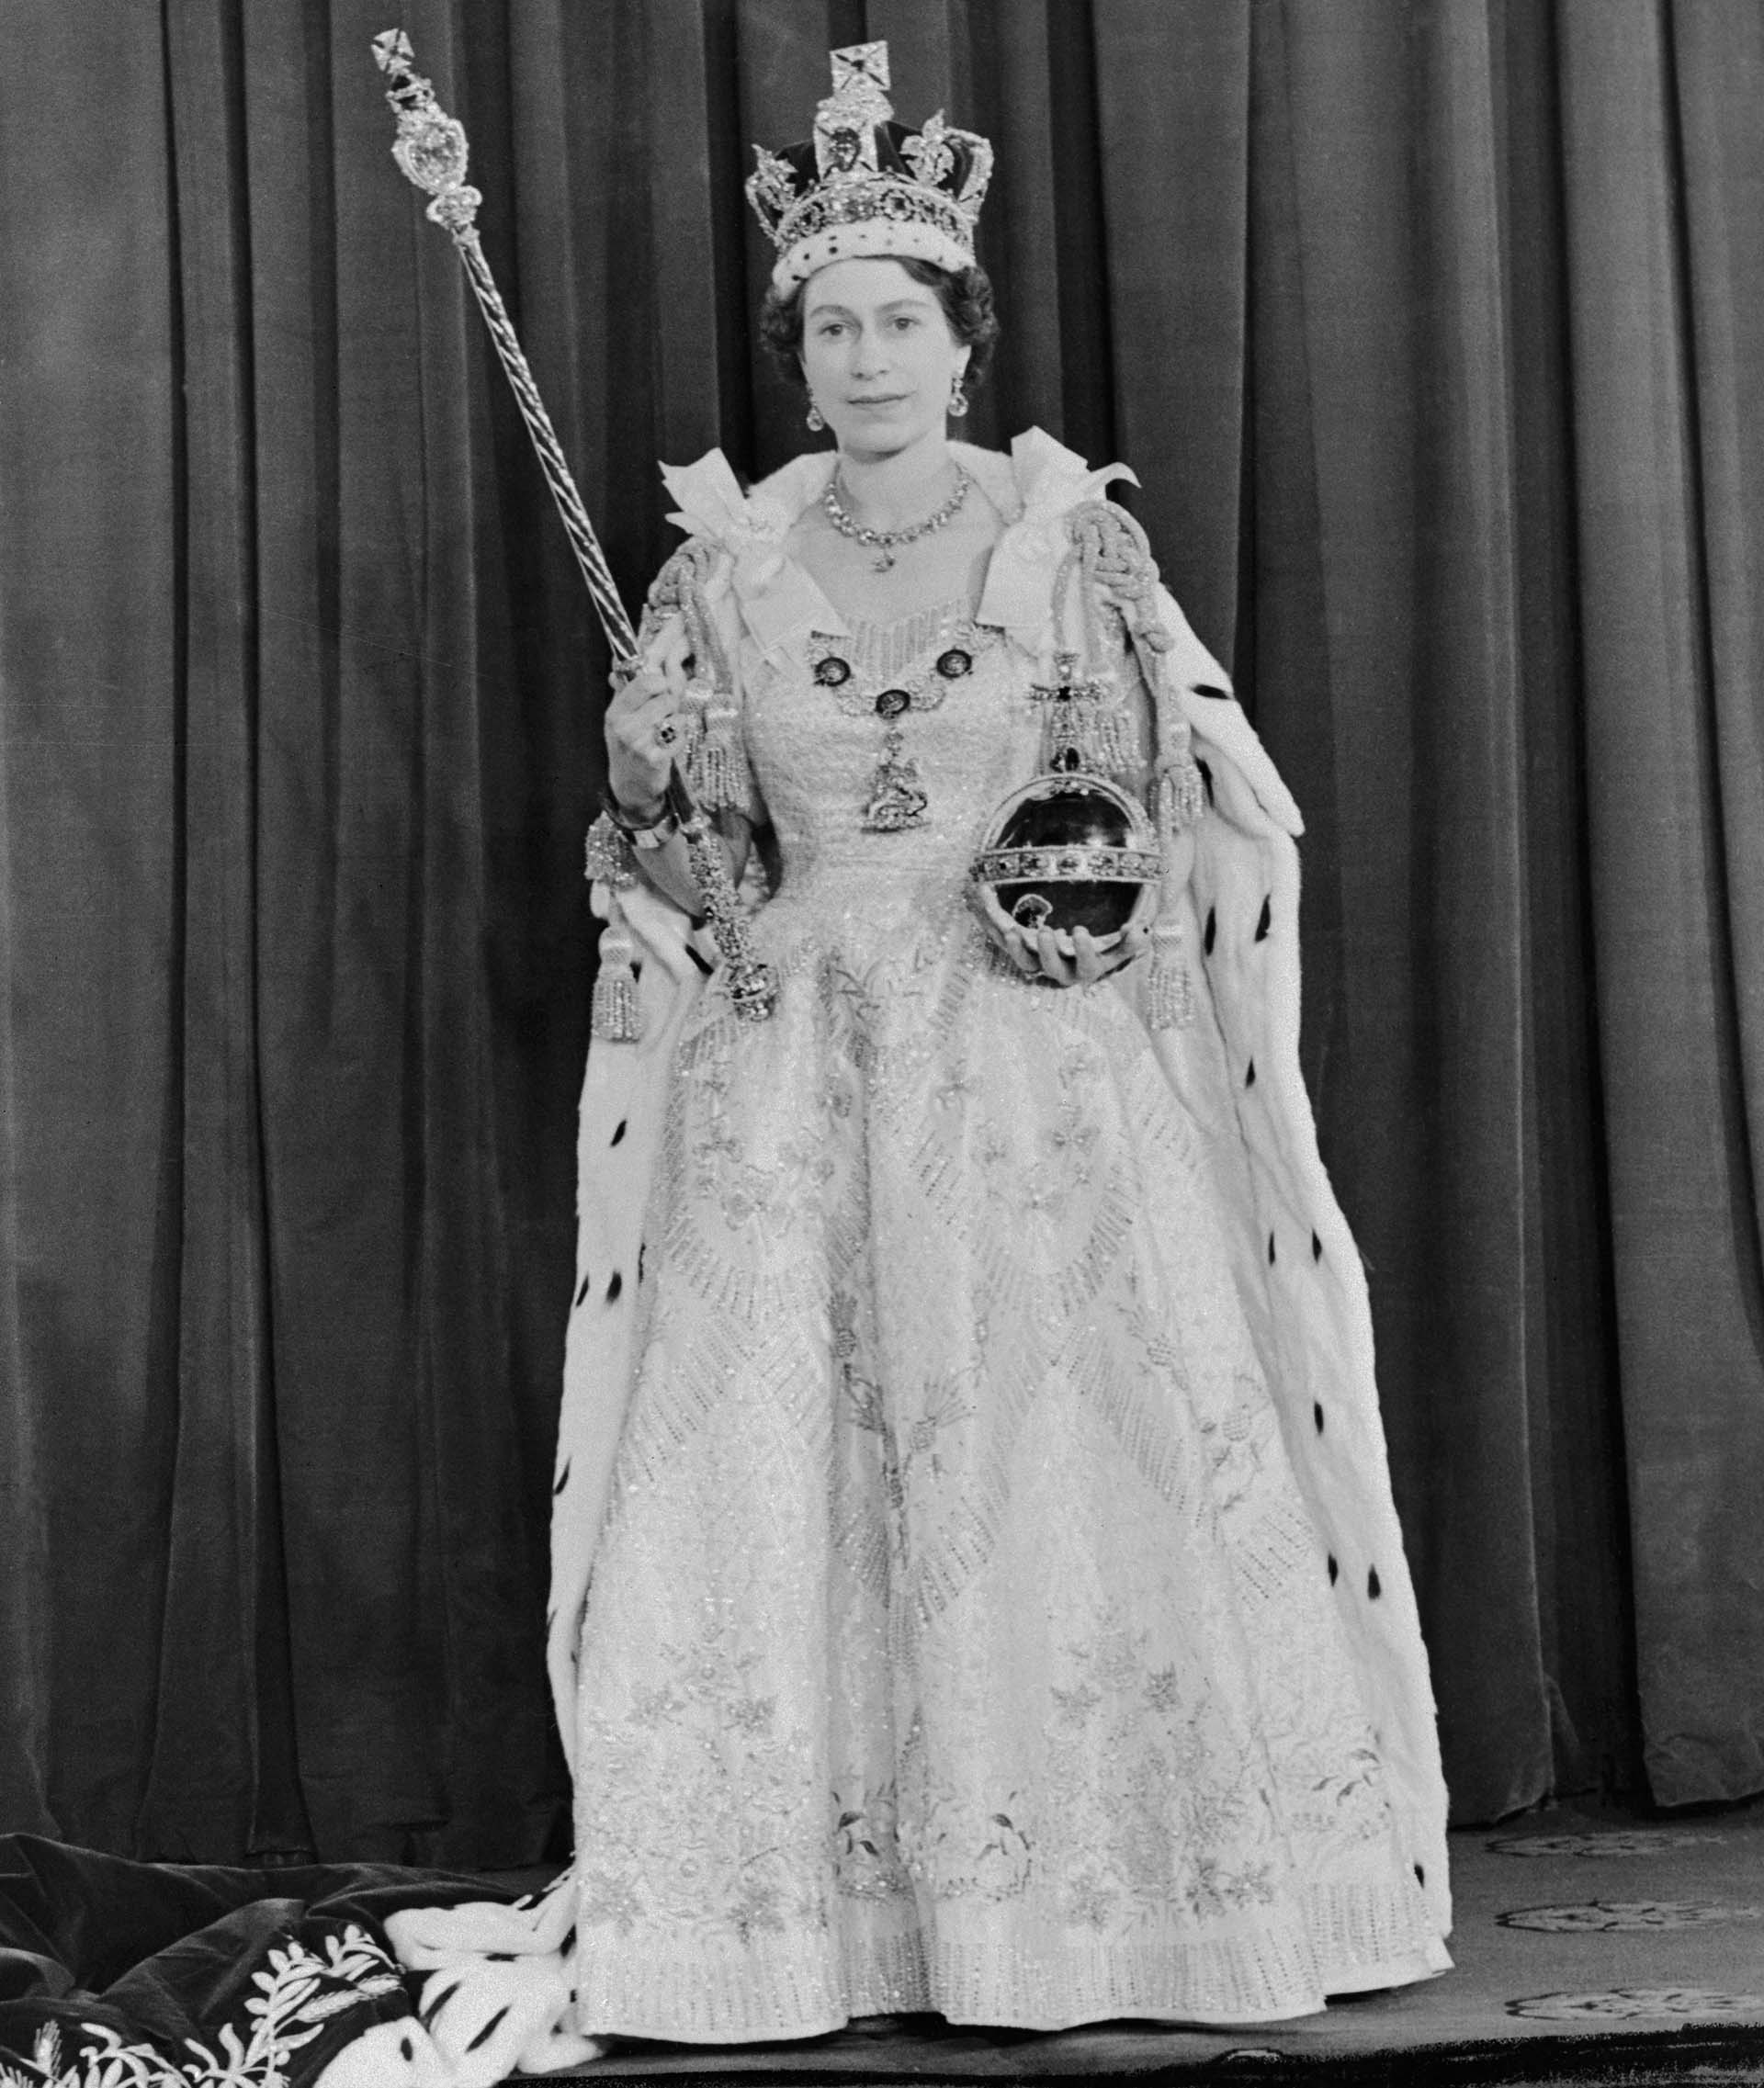 La fotografía oficial de Isabel II el día de su coronación, luciendo todos los símbolos de su poder: la corona imperial, el cetro, el orbe y el anillo imperial. Se diseñaron nueve vestidos, que llevaron meses de trabajo de varias costureras bajo las órdenes de Norman Hartnell, hasta que la monarca se decidió por el octavo modelo